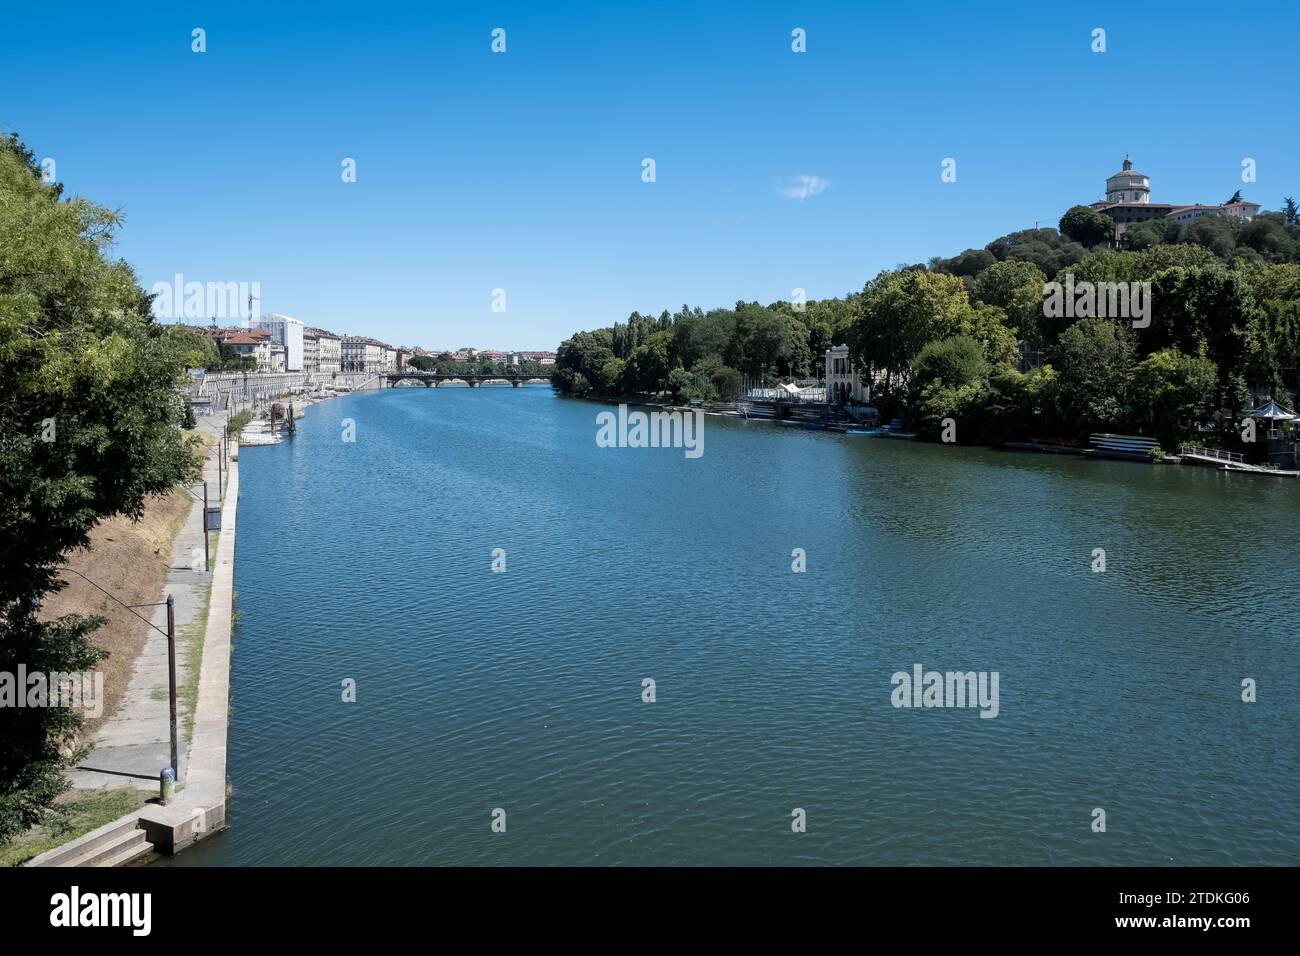 Paesaggio urbano di Torino, in Italia, visto dal Ponte Umberto i in una giornata estiva soleggiata e luminosa, che mette in risalto il pittoresco fiume po. Foto Stock